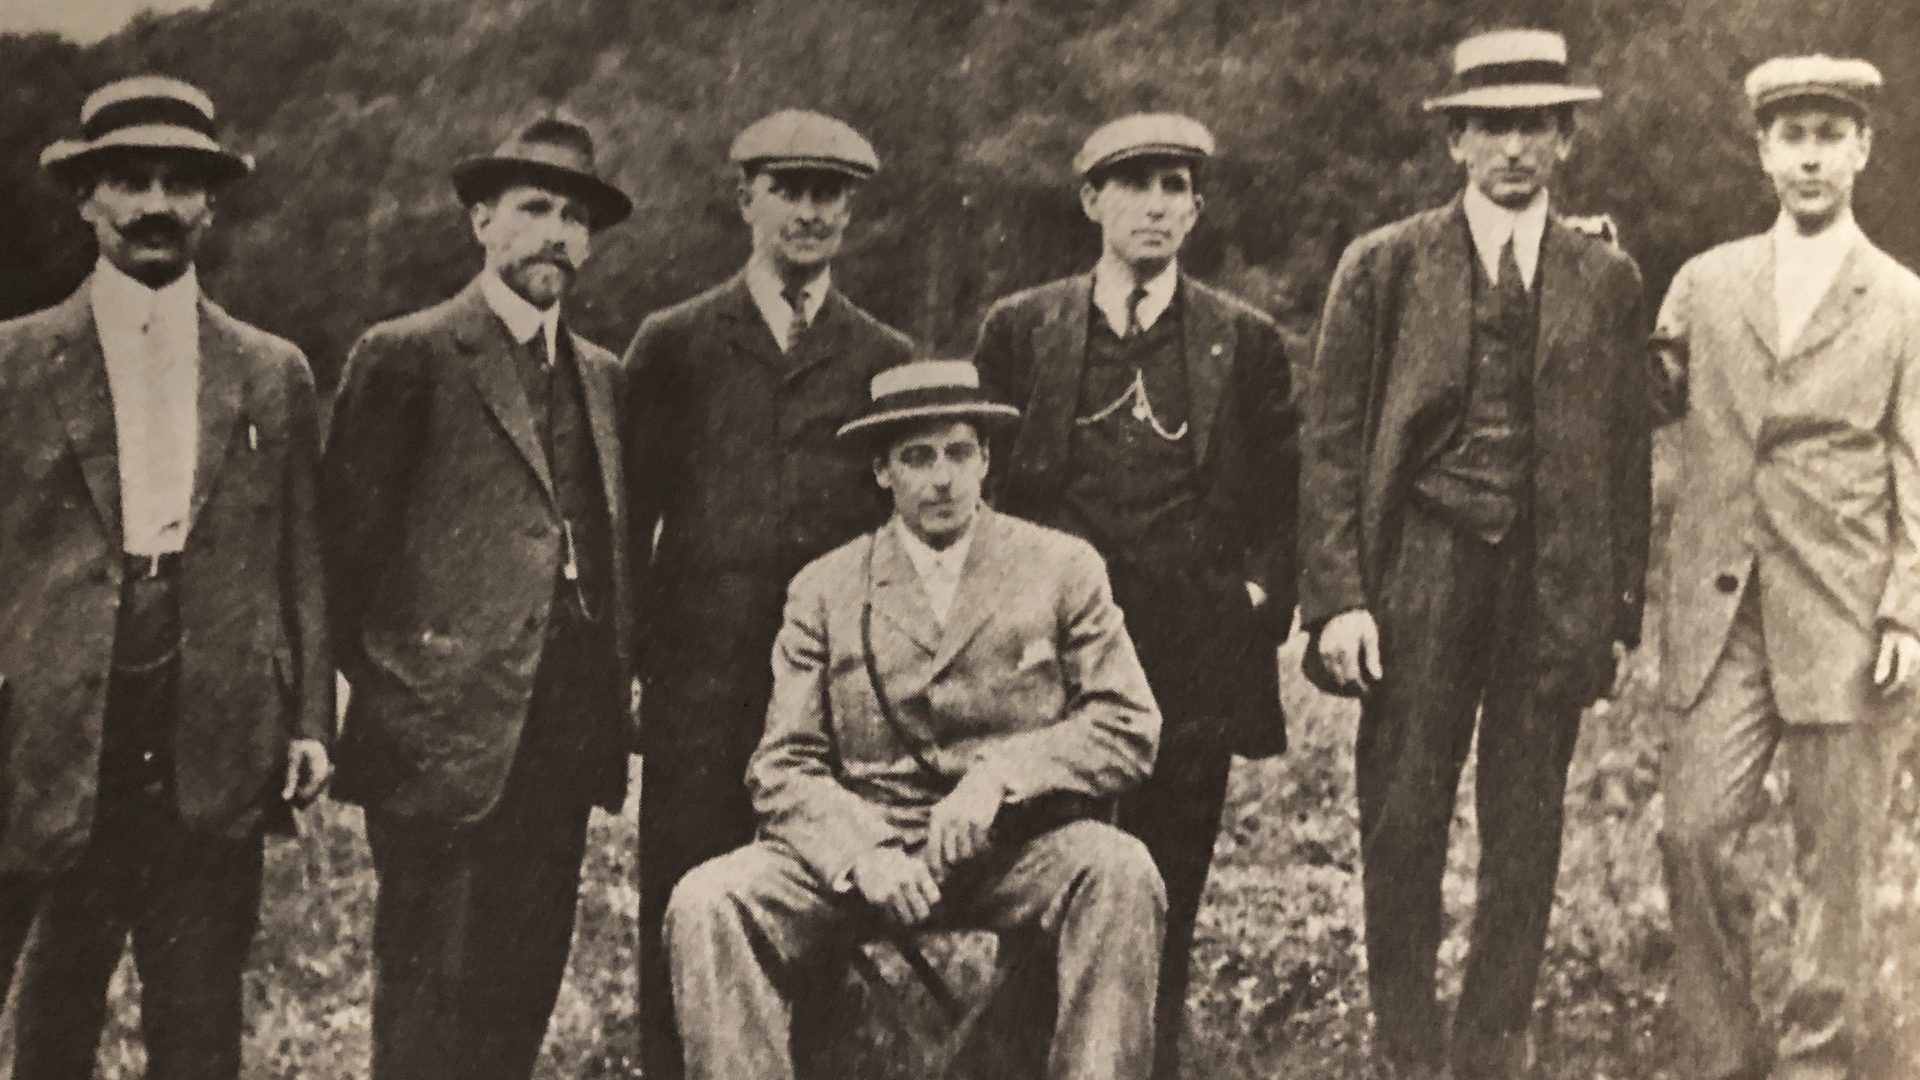 1912 hat styles for men